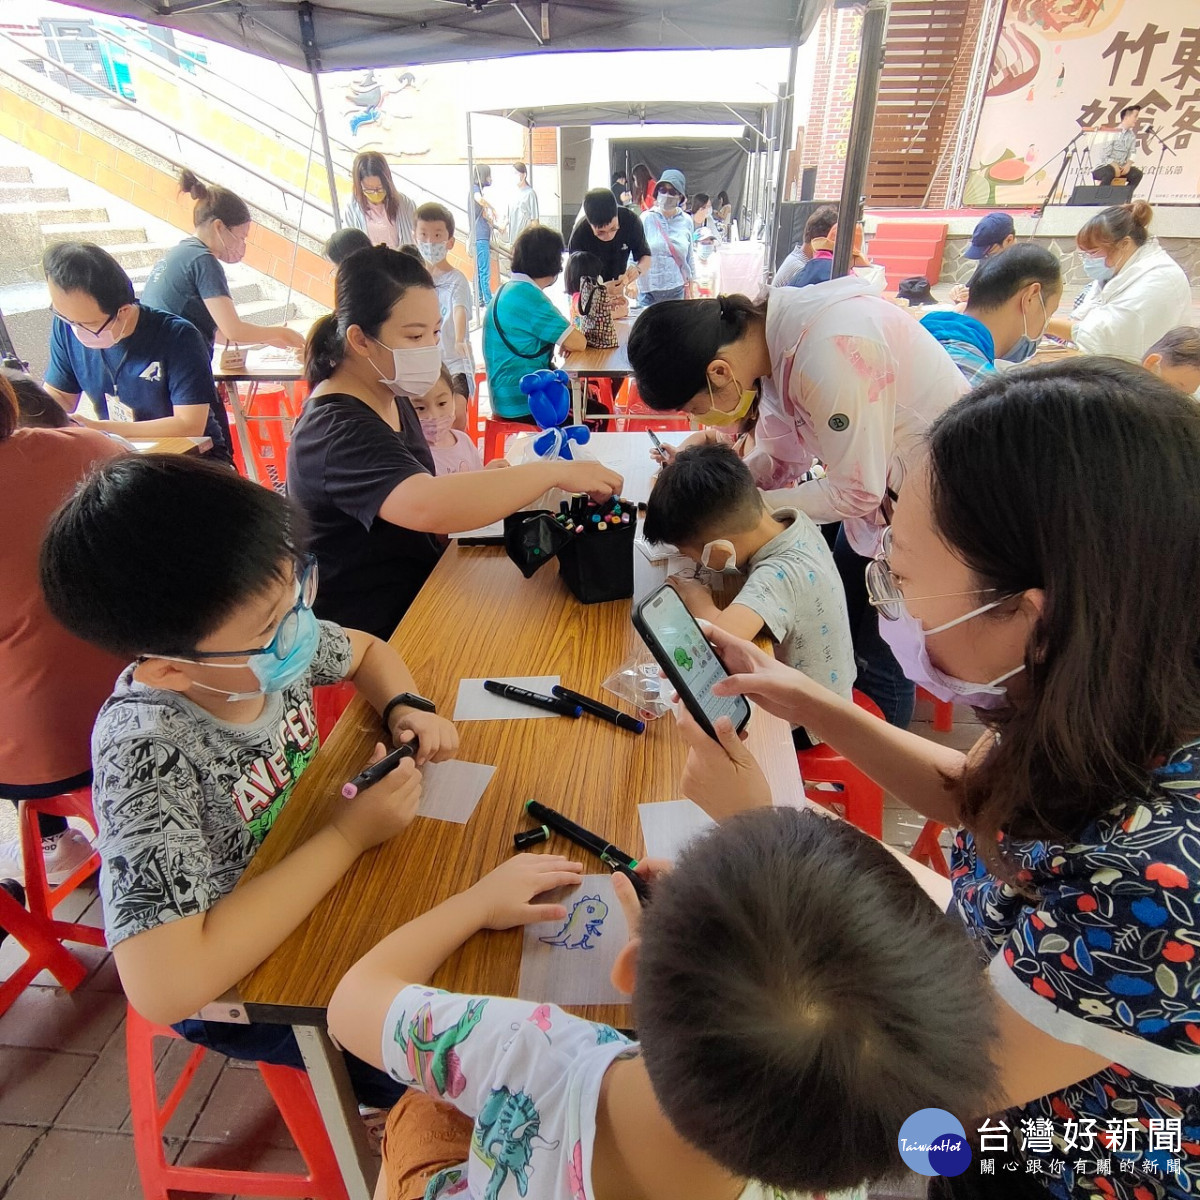 竹東客家美食生活節熱鬧登場　大人小孩開心歡度周末